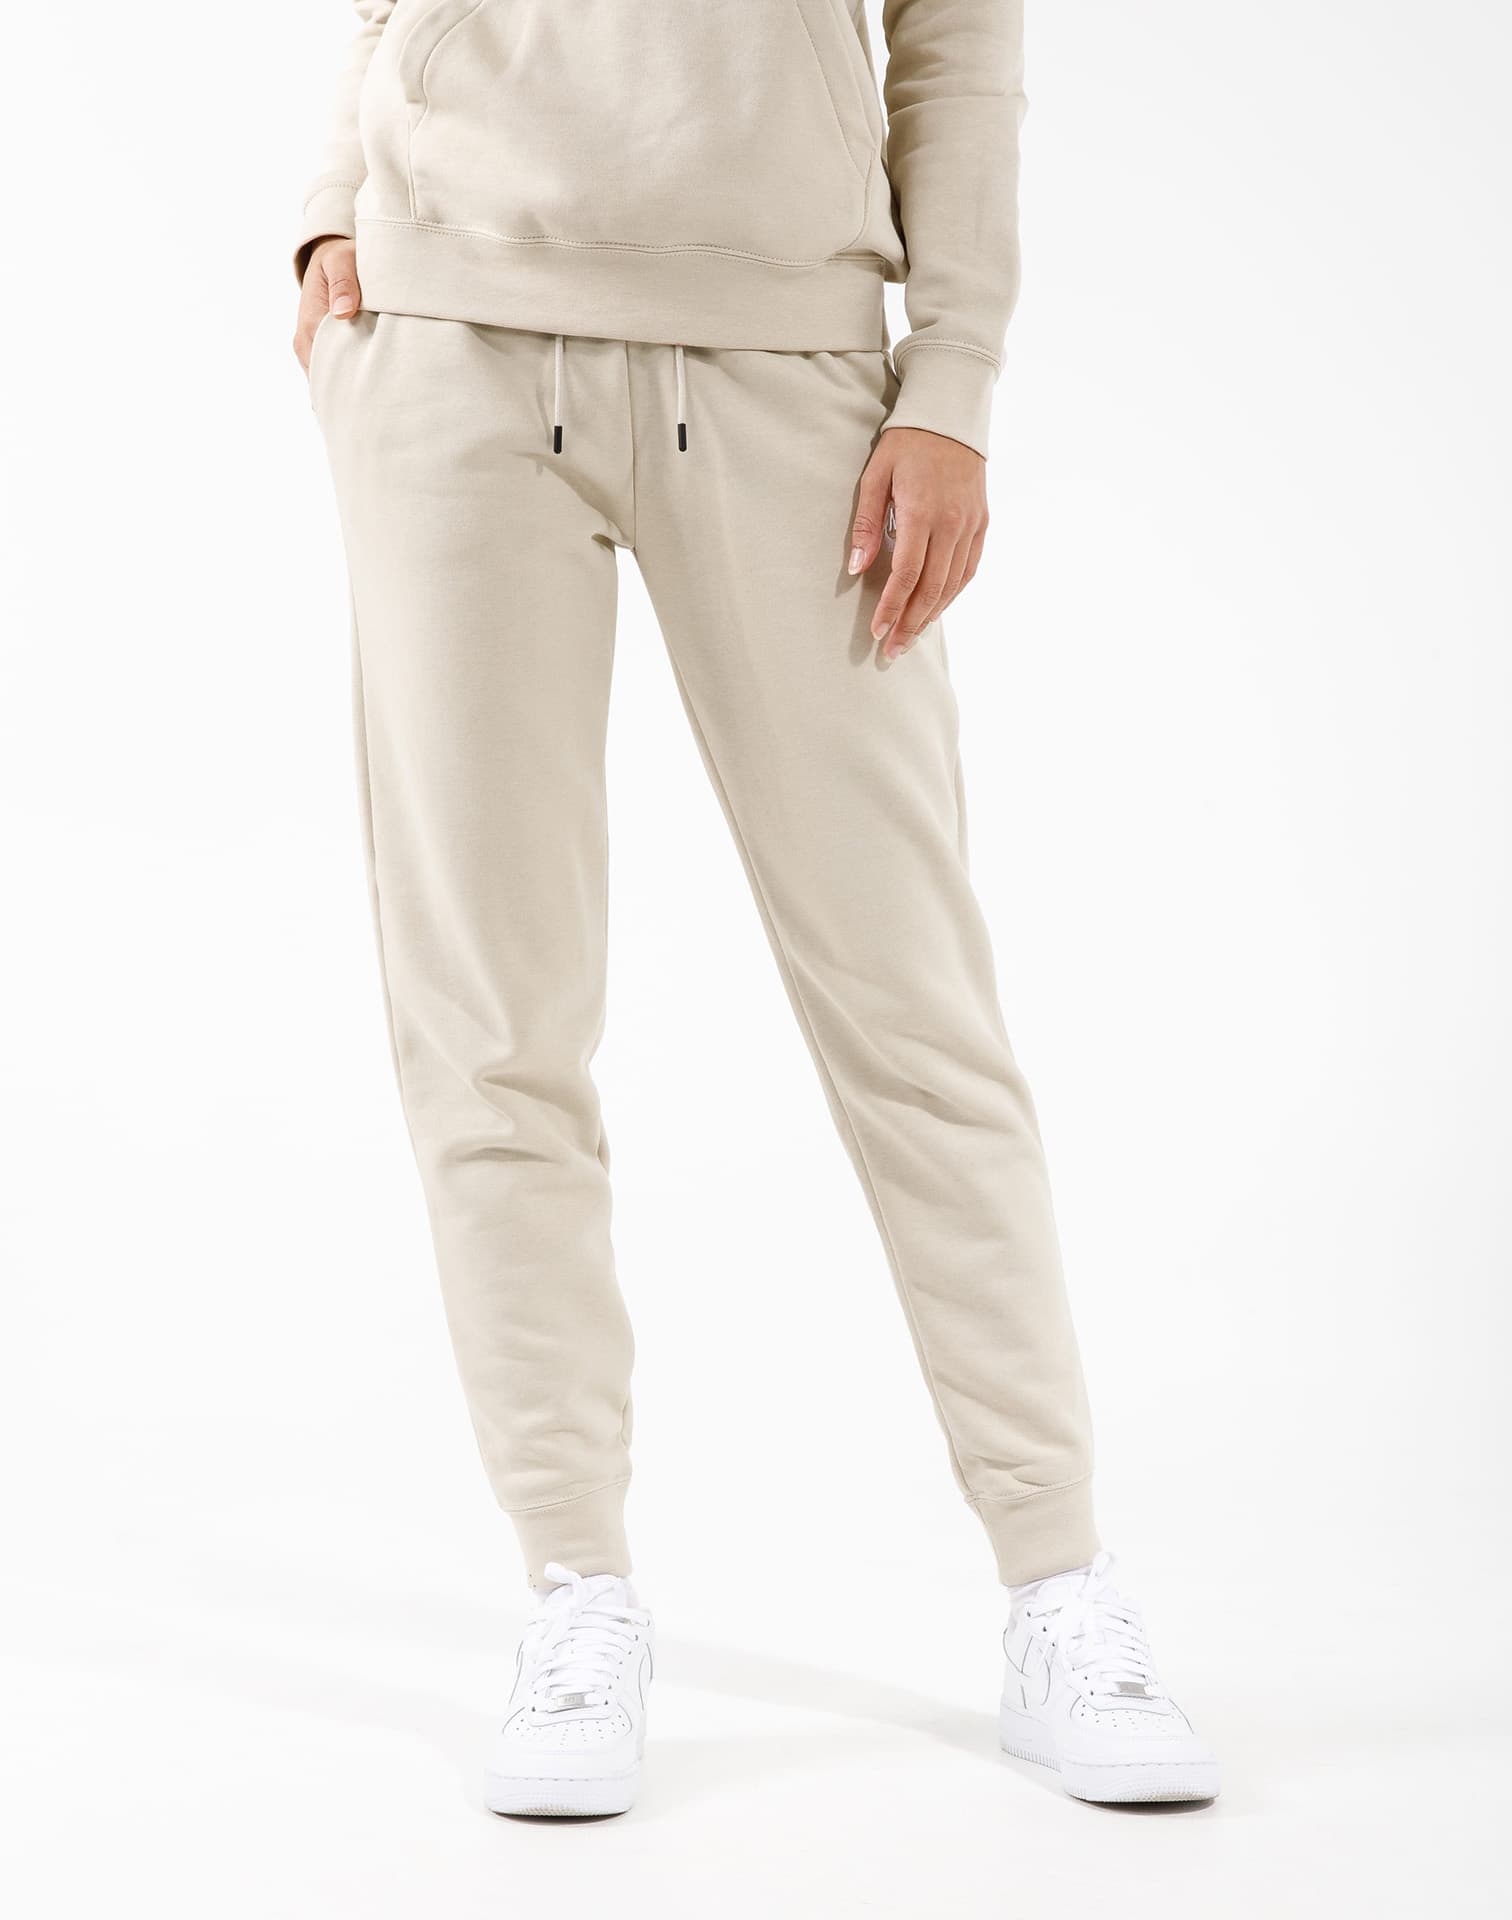 Nike Nsw Essential Fleece Pants – DTLR